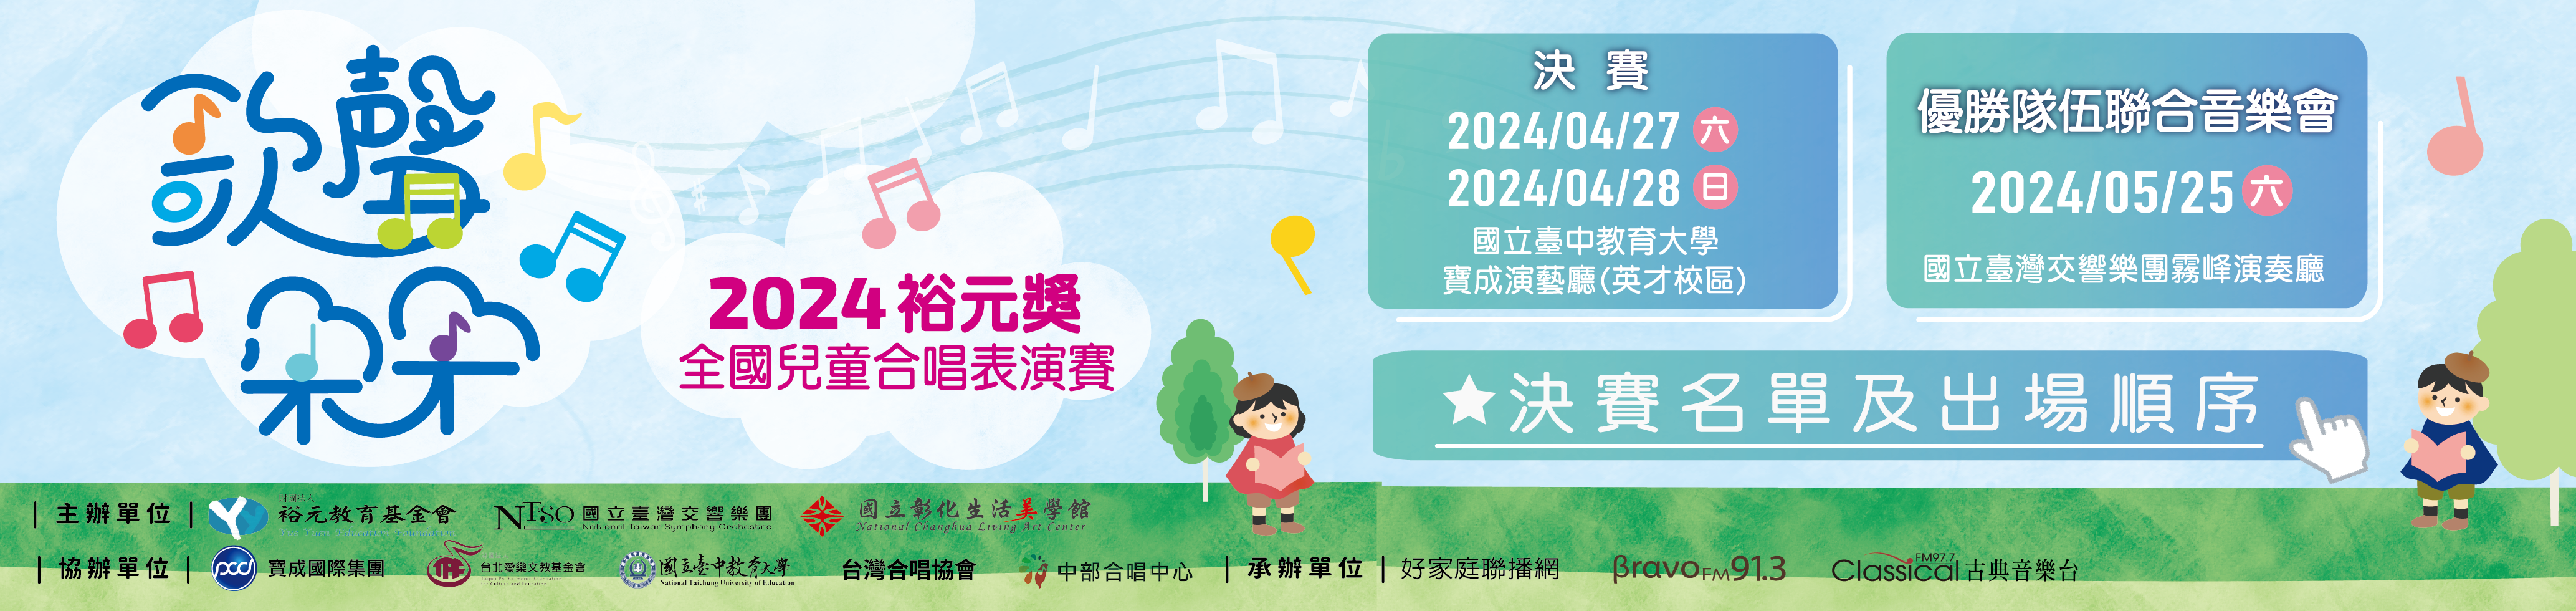 2024裕元獎-全國兒童合唱表演賽